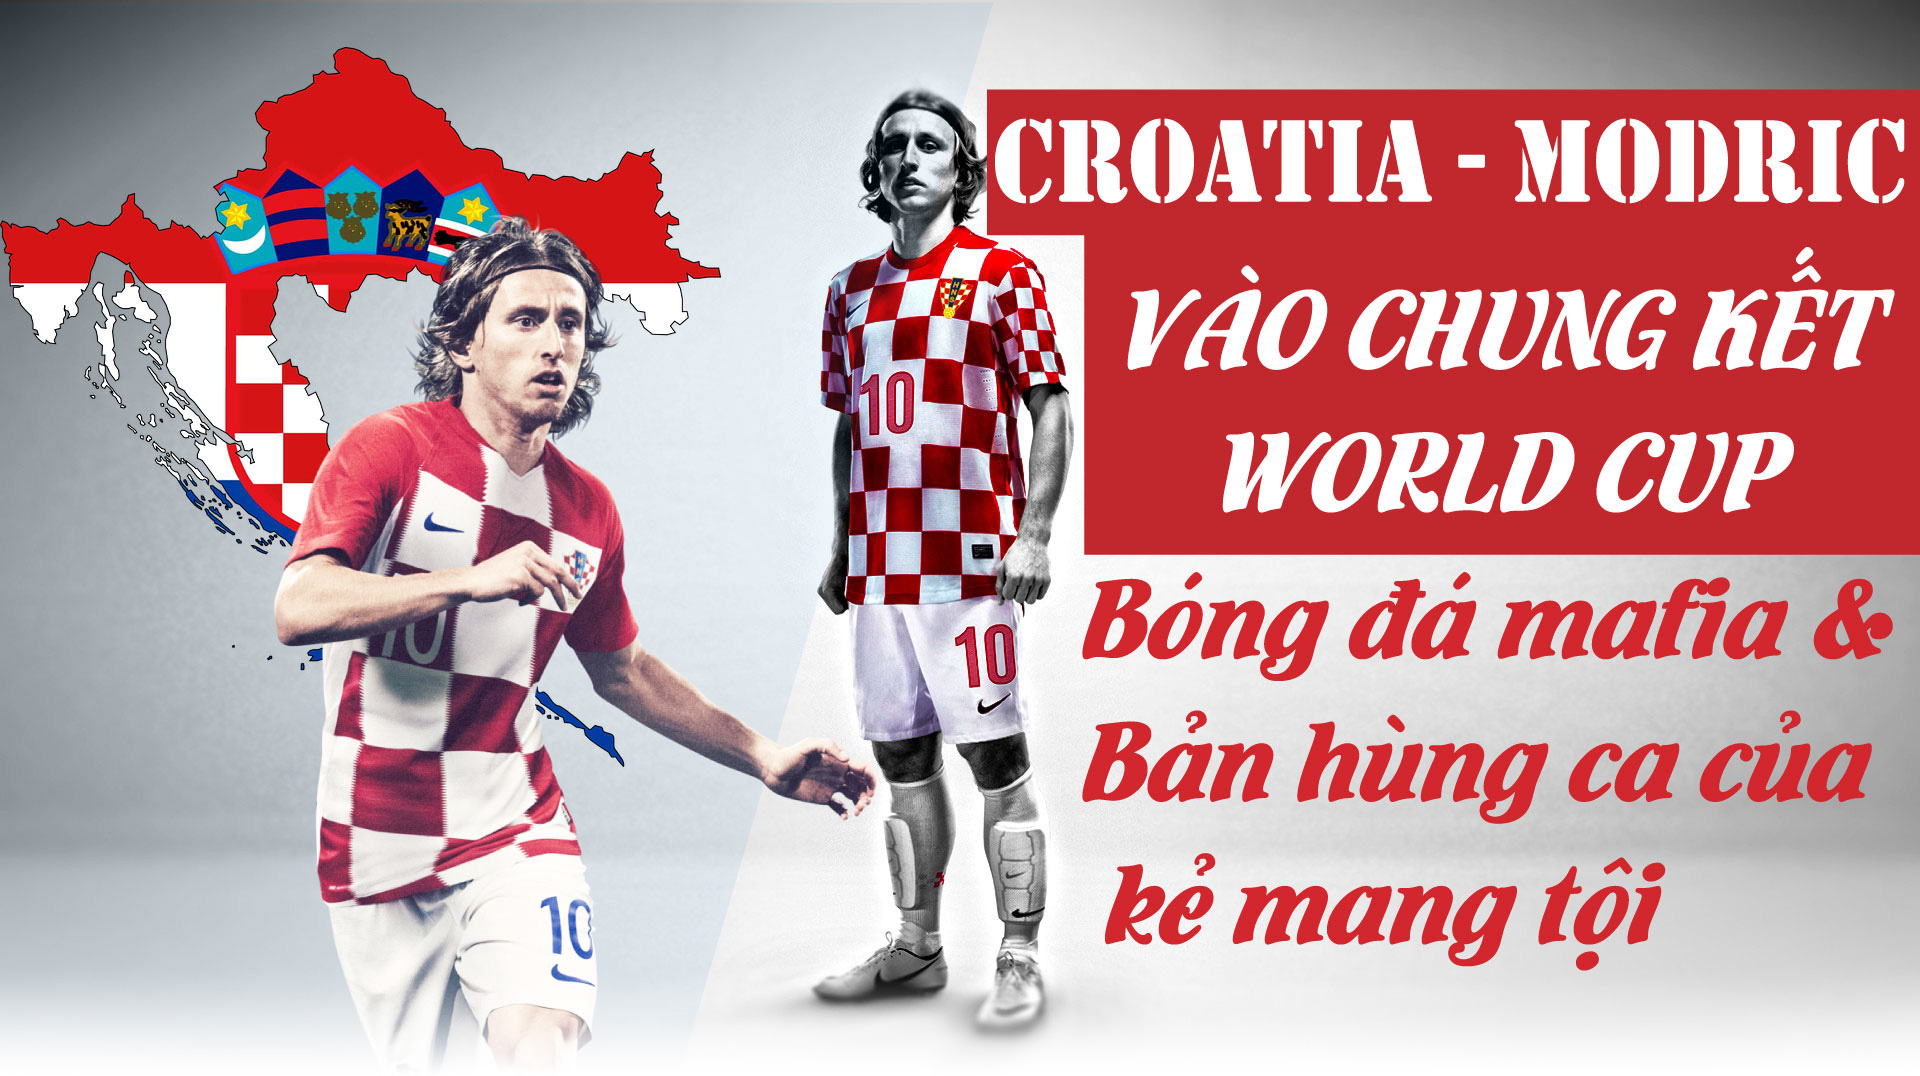 Croatia - Modric chung kết World Cup: Bóng đá hắc ám & bản hùng ca của kẻ mang tội - 1